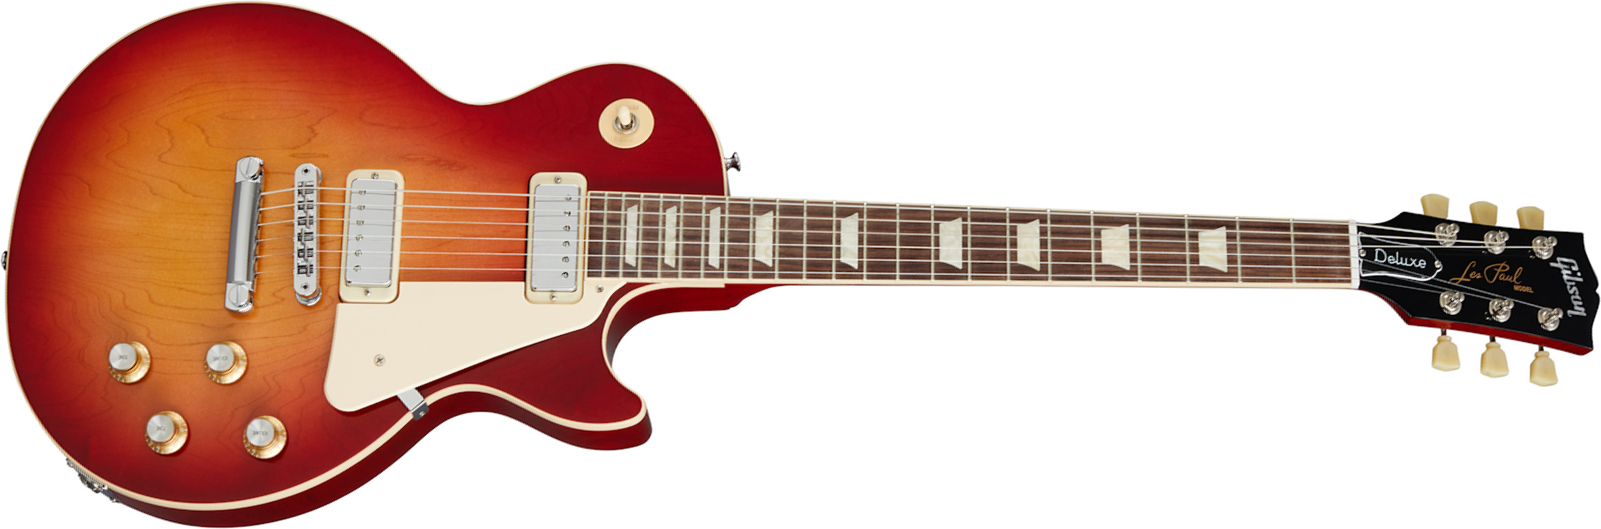 Gibson Les Paul Deluxe 70s Original 2mh Ht Rw - 70s Cherry Sunburst - Guitarra eléctrica de corte único. - Main picture